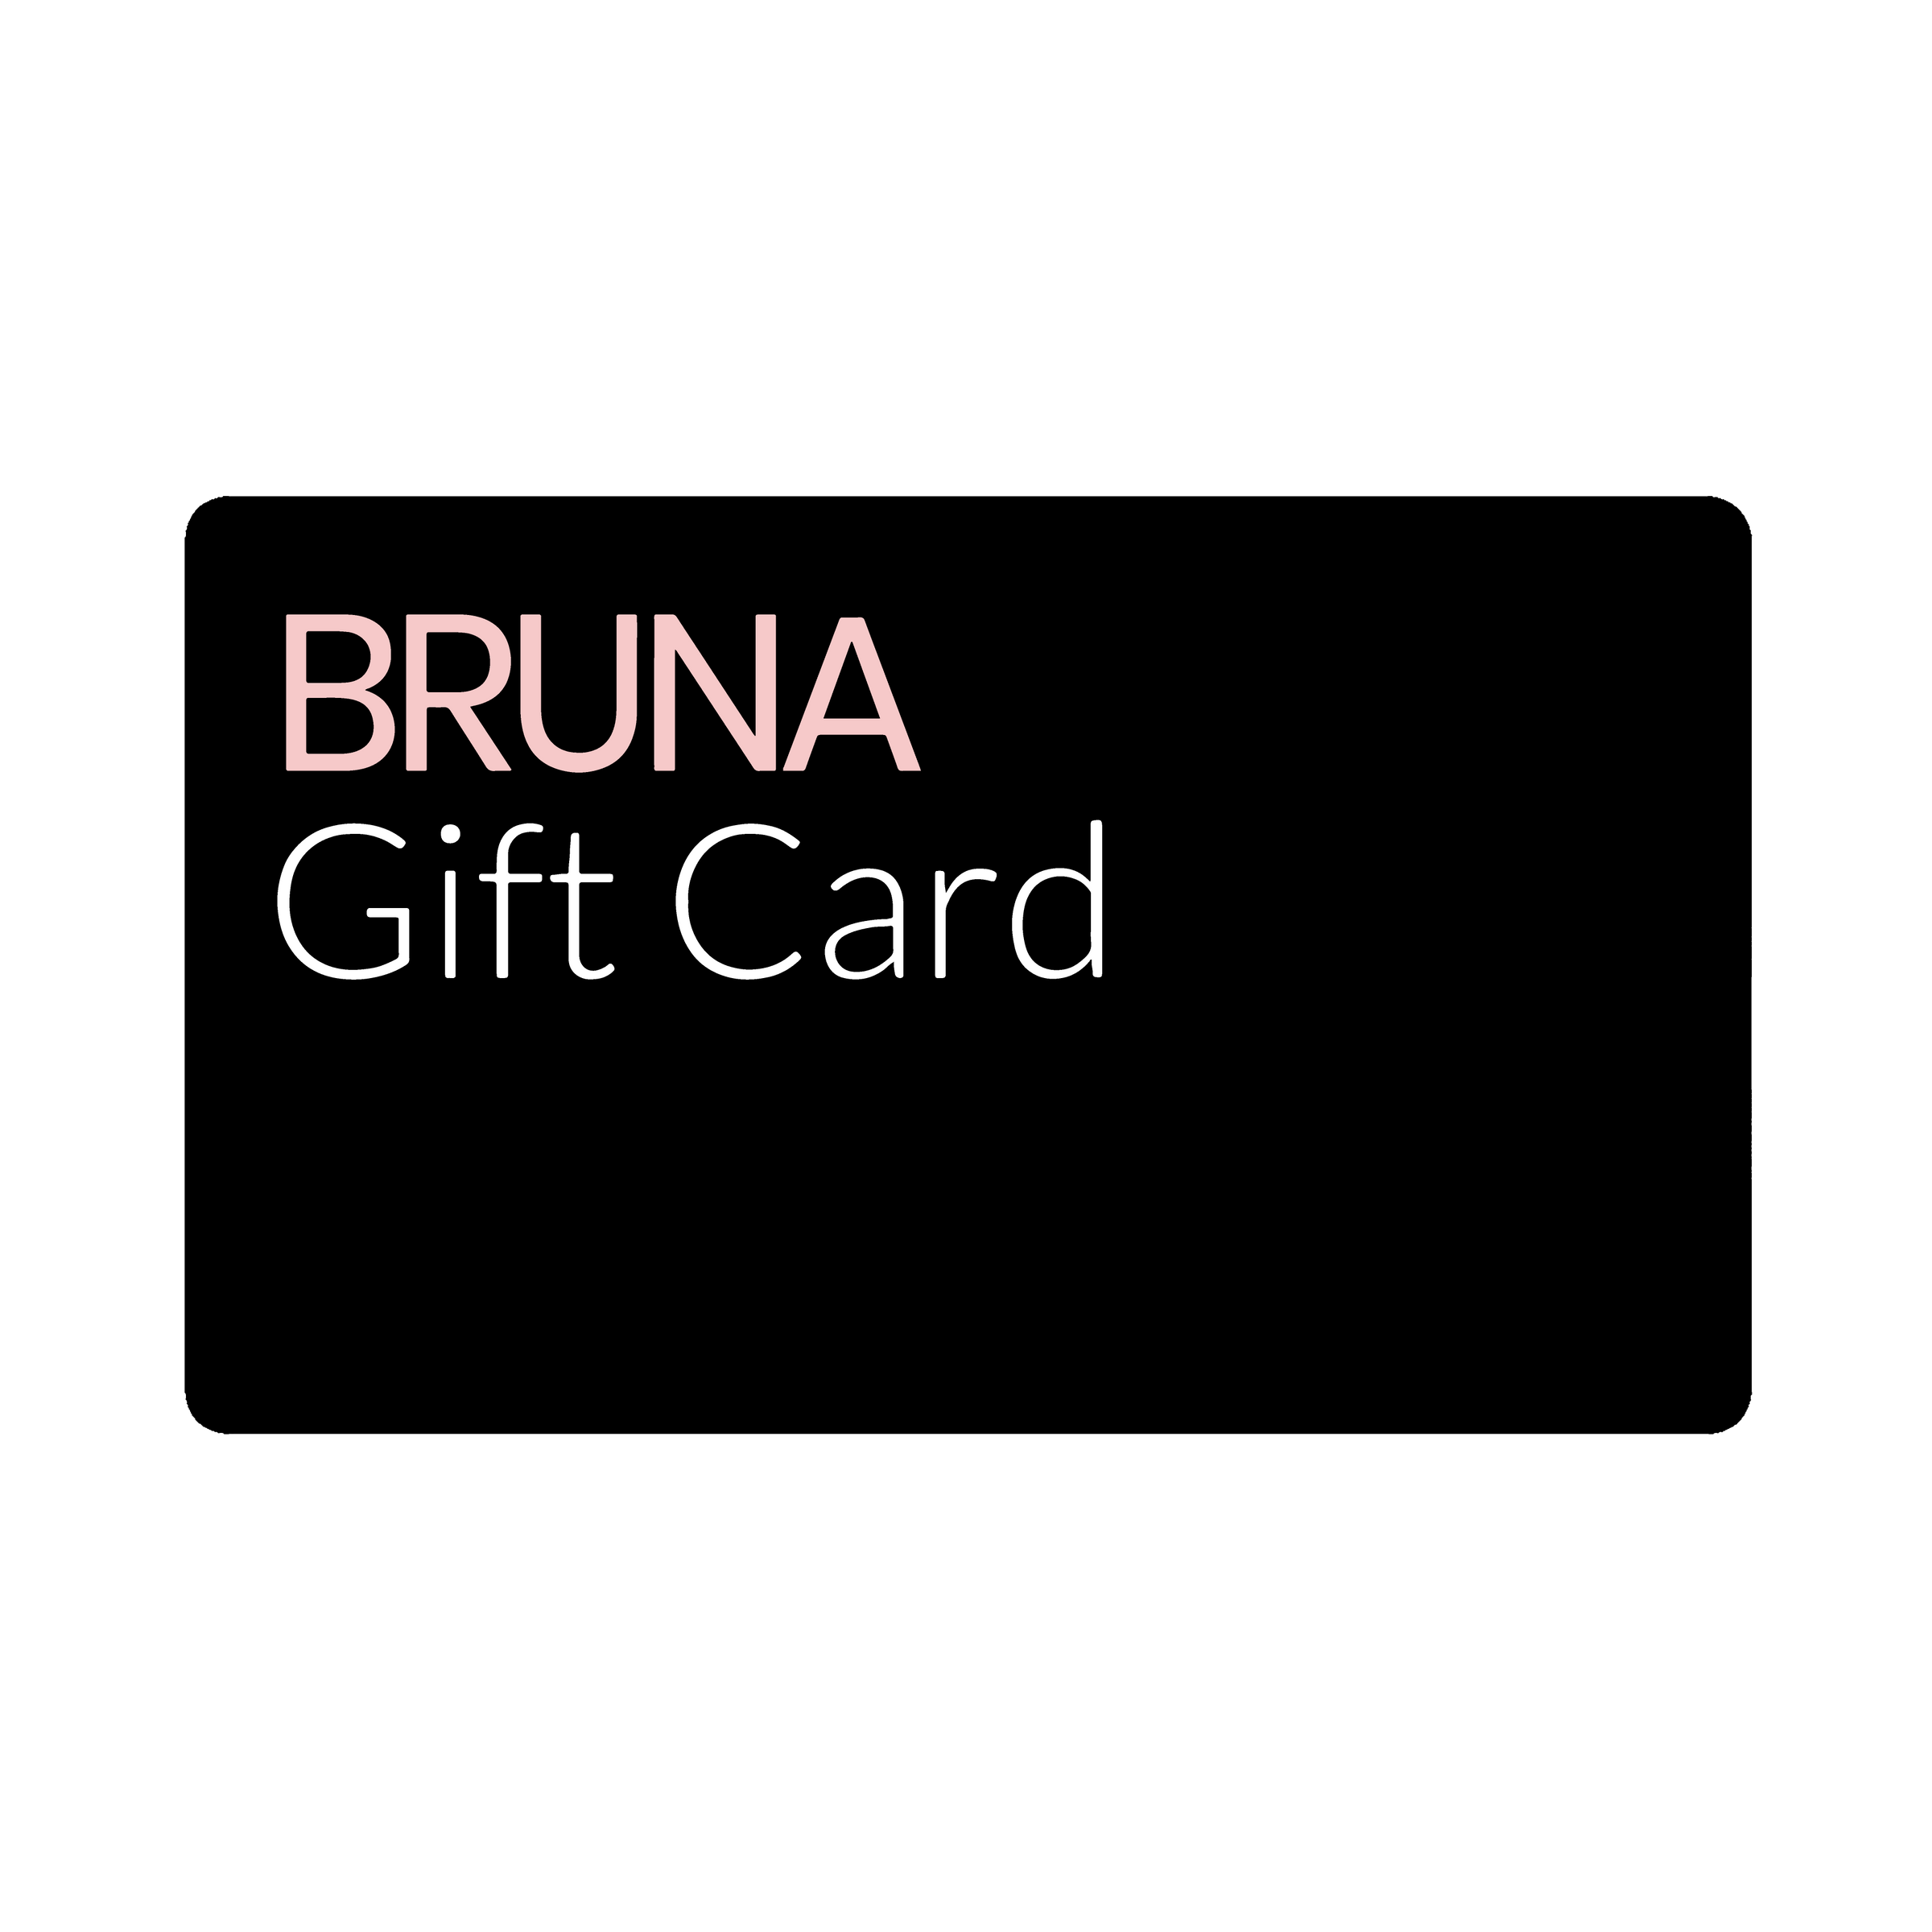 BRUNA Design Store - Gift Card